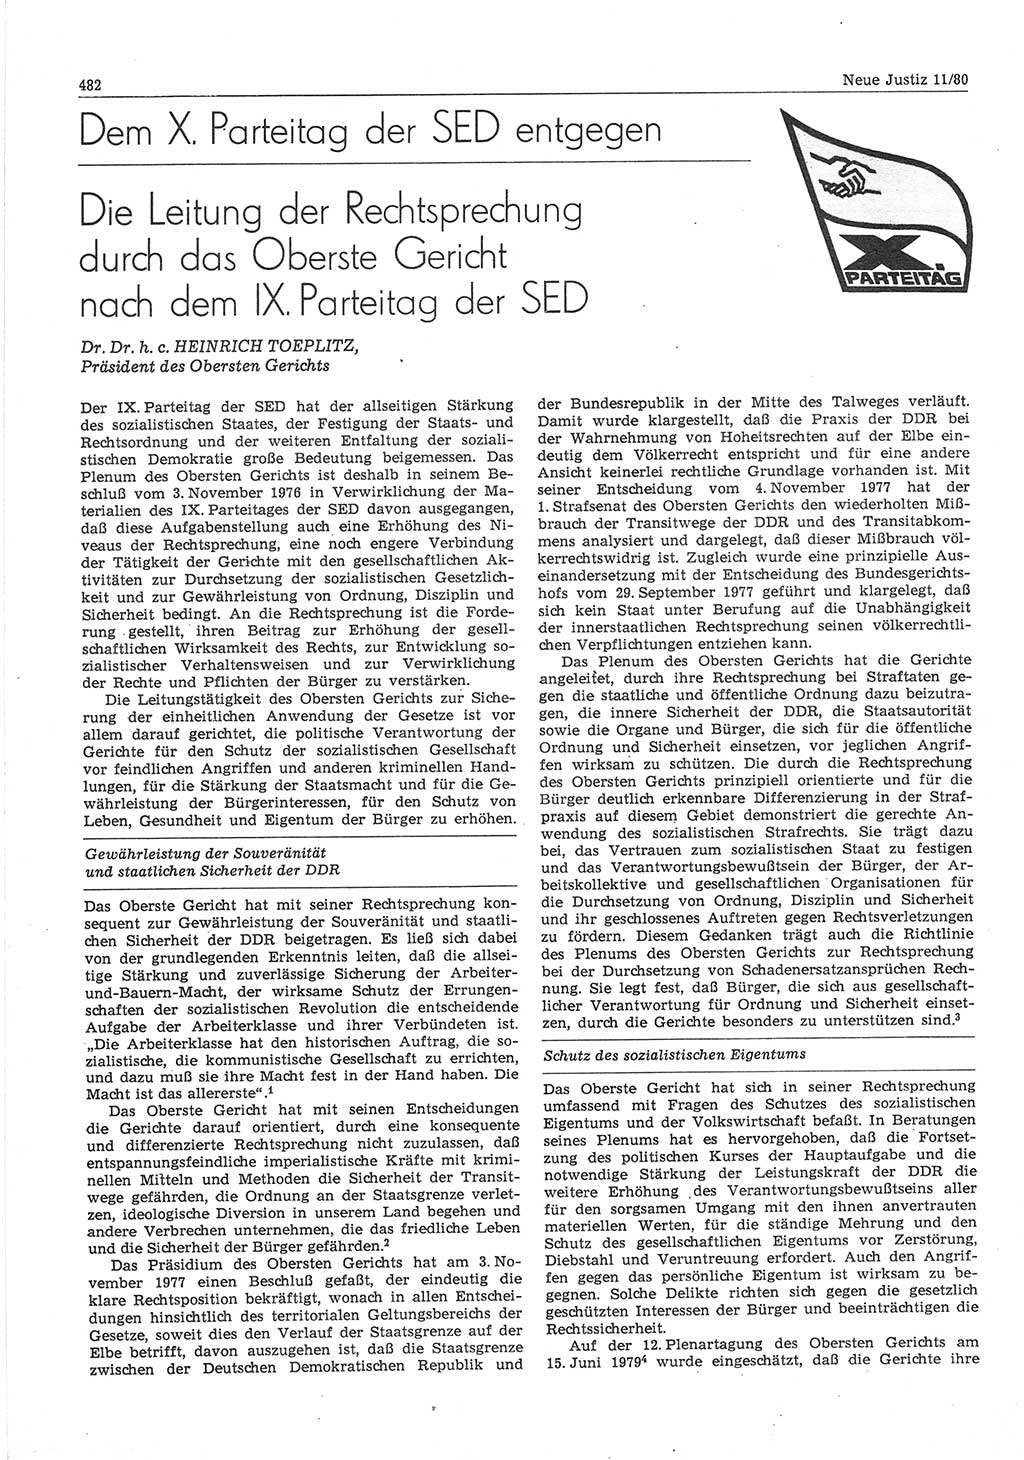 Neue Justiz (NJ), Zeitschrift für sozialistisches Recht und Gesetzlichkeit [Deutsche Demokratische Republik (DDR)], 34. Jahrgang 1980, Seite 482 (NJ DDR 1980, S. 482)